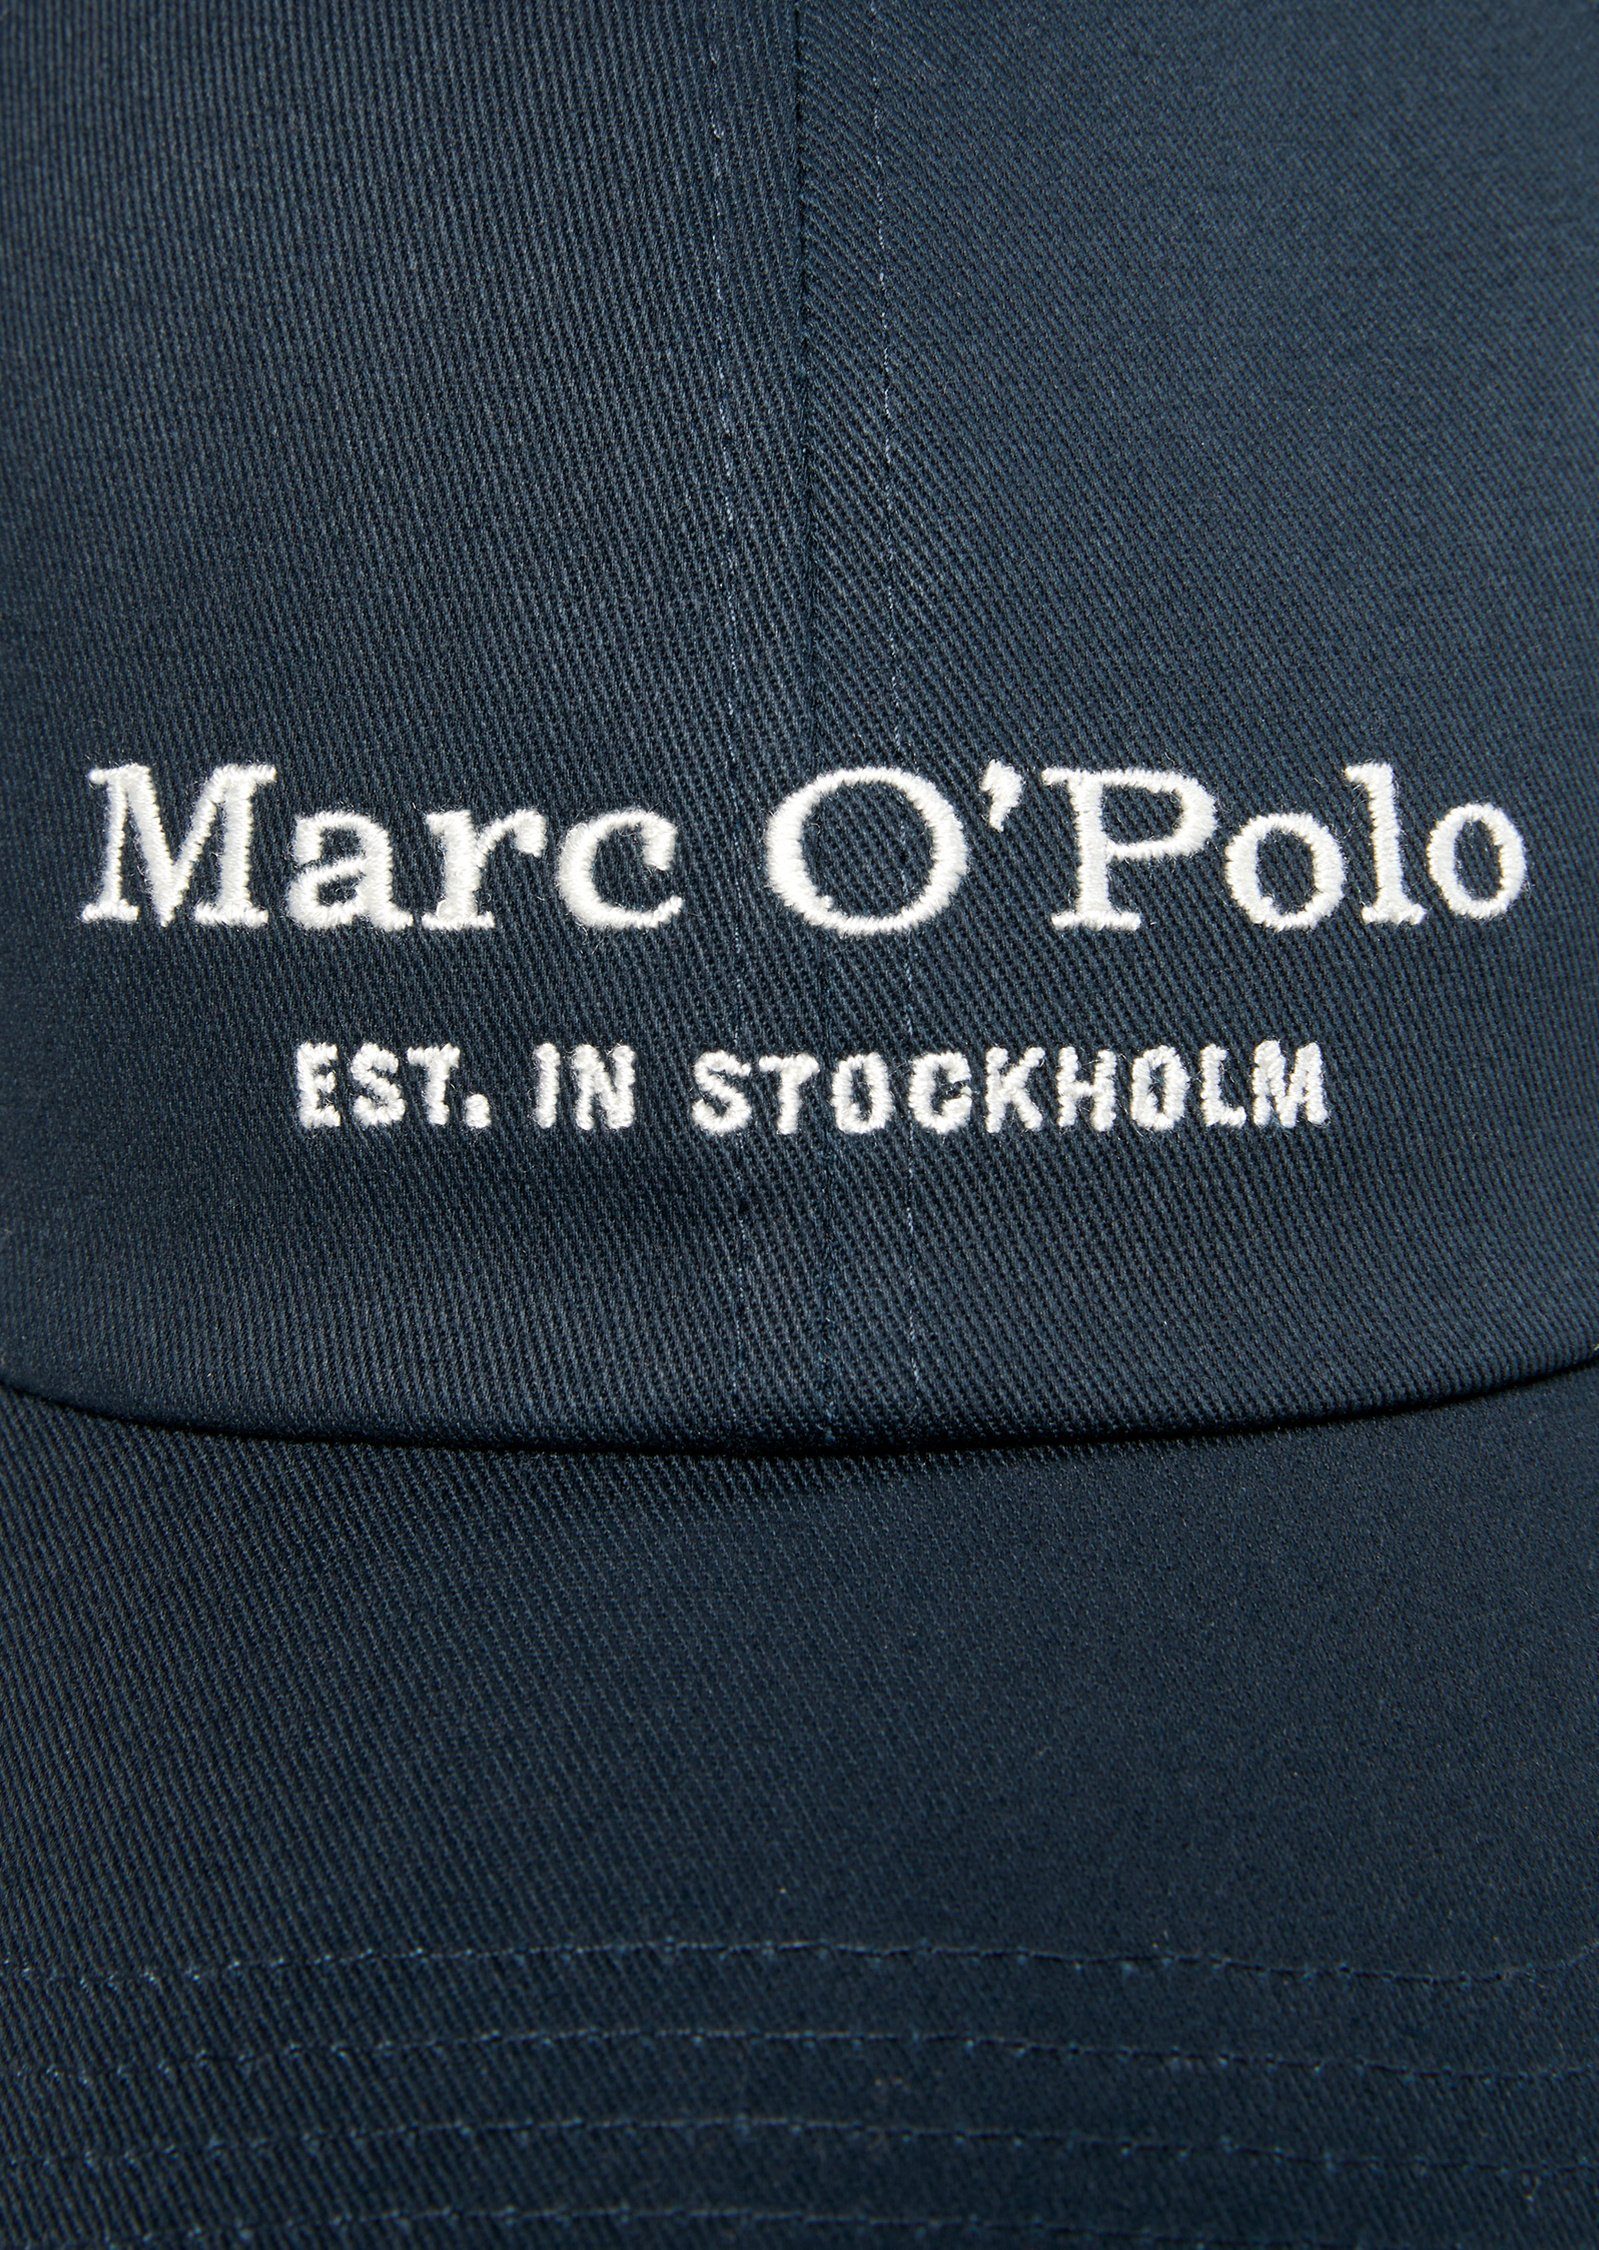 dunkelblau Baseball Cap aus Marc Organic-Twill hochwertigem O'Polo